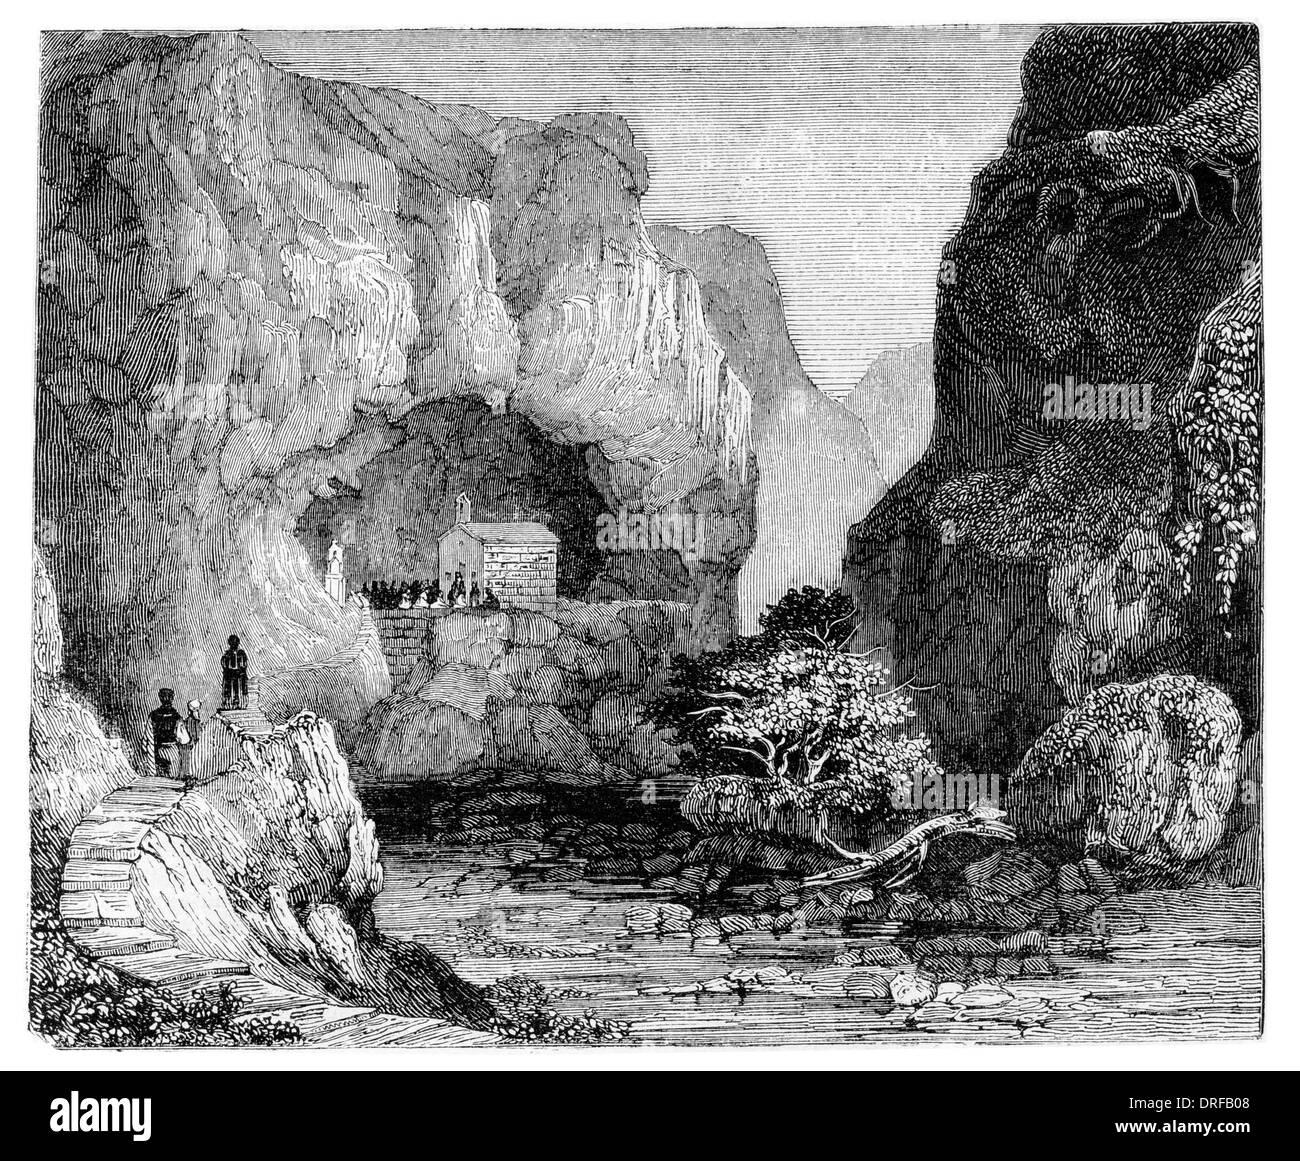 Grotte naturelle, dédiée à Saint Paul, dans l'île de Malte vers 1854 Banque D'Images